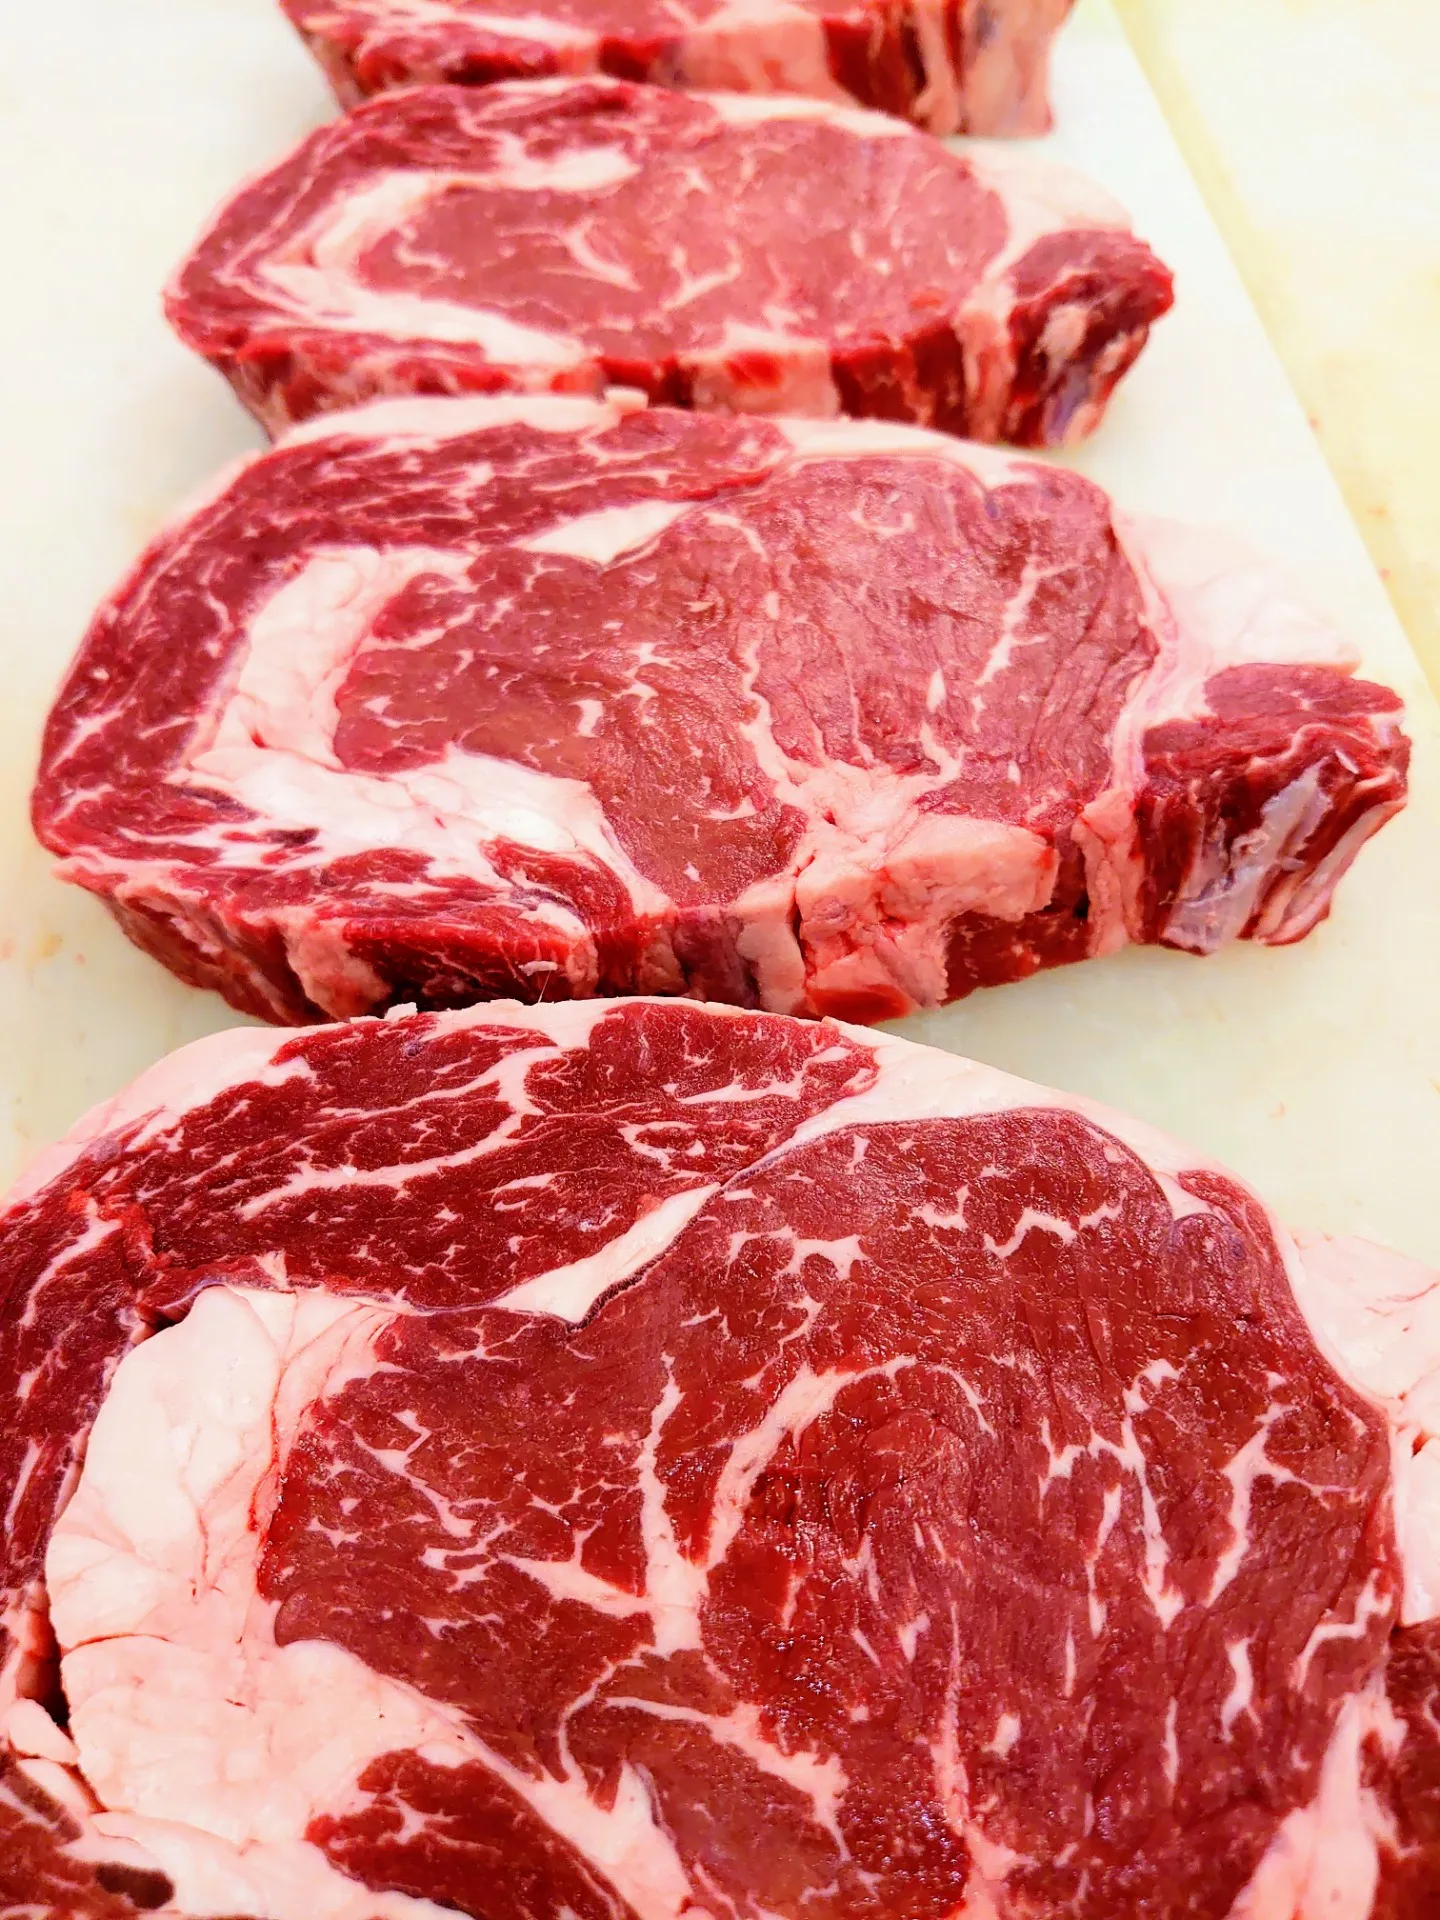 世田谷のこだわり輸入牛専門オンライン肉屋が営業中です!リブロースがおすすめです!